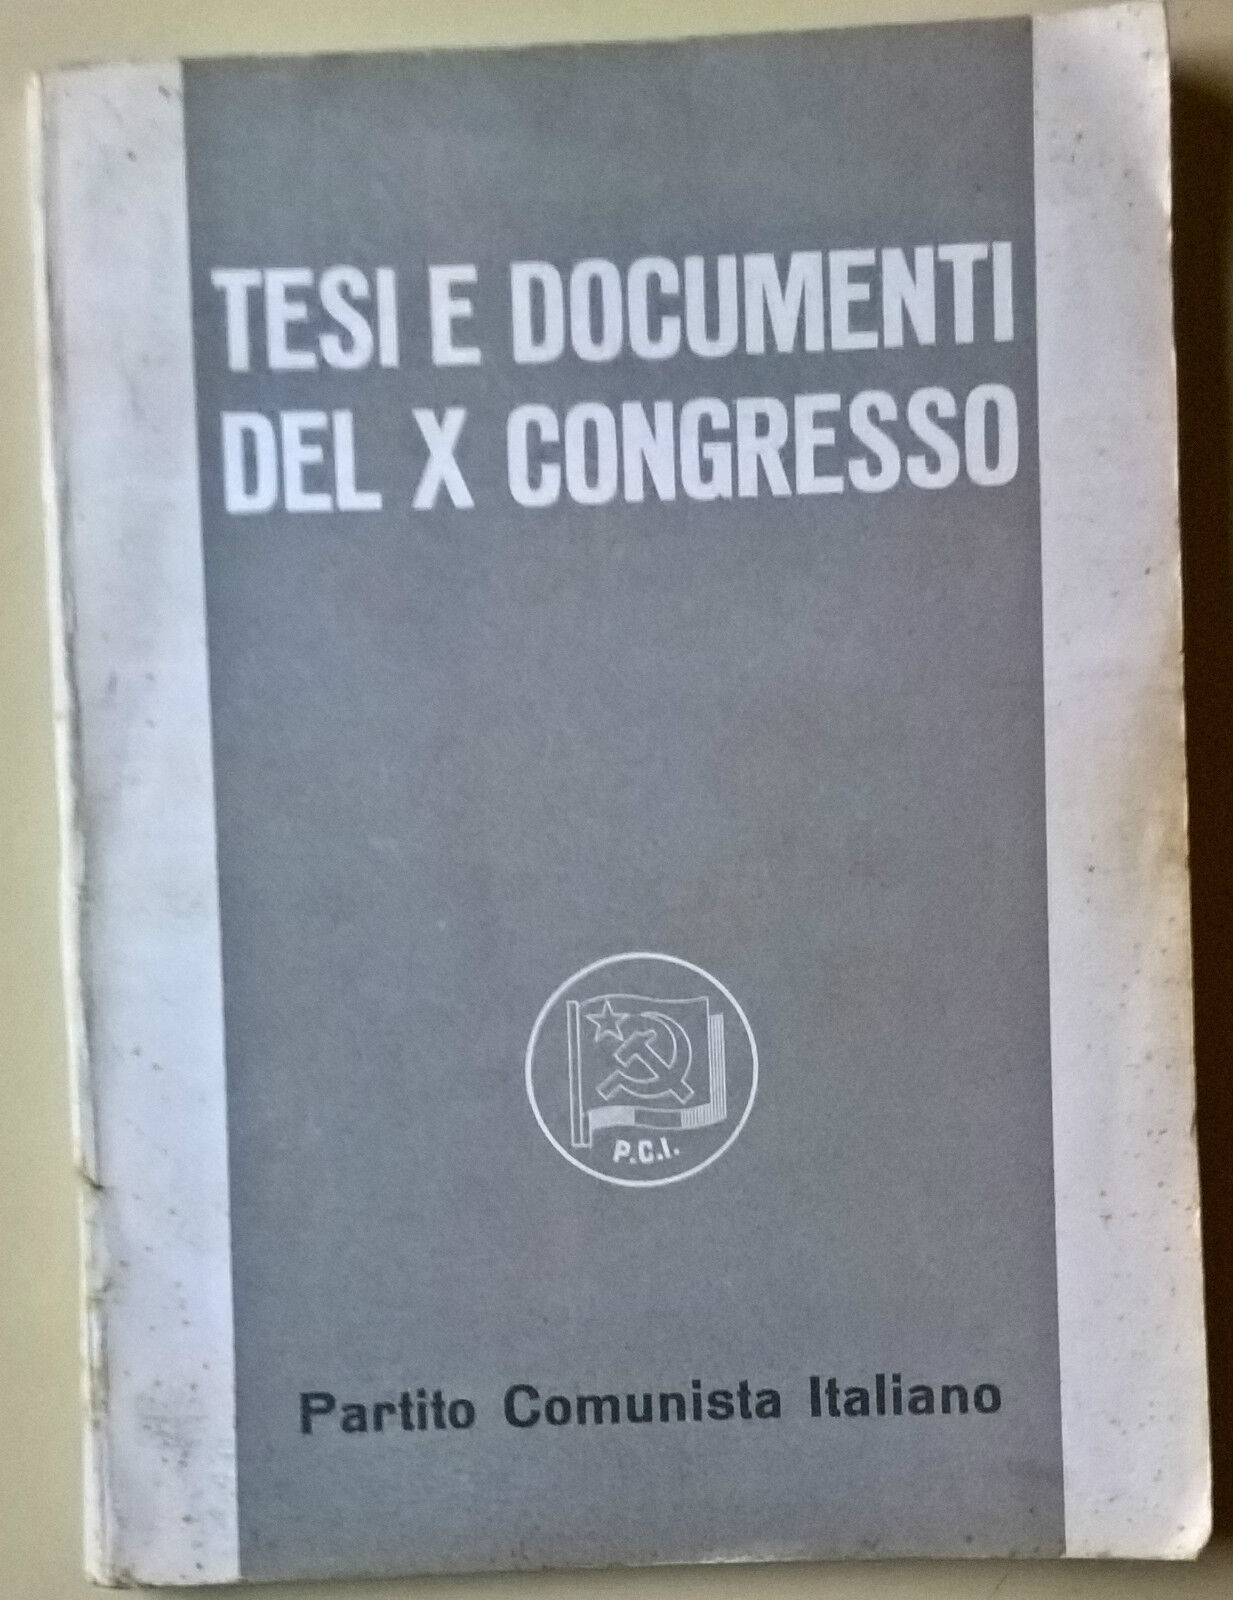 Tesi e documenti del X congresso. Partito Comunista italiano - 1963 - L